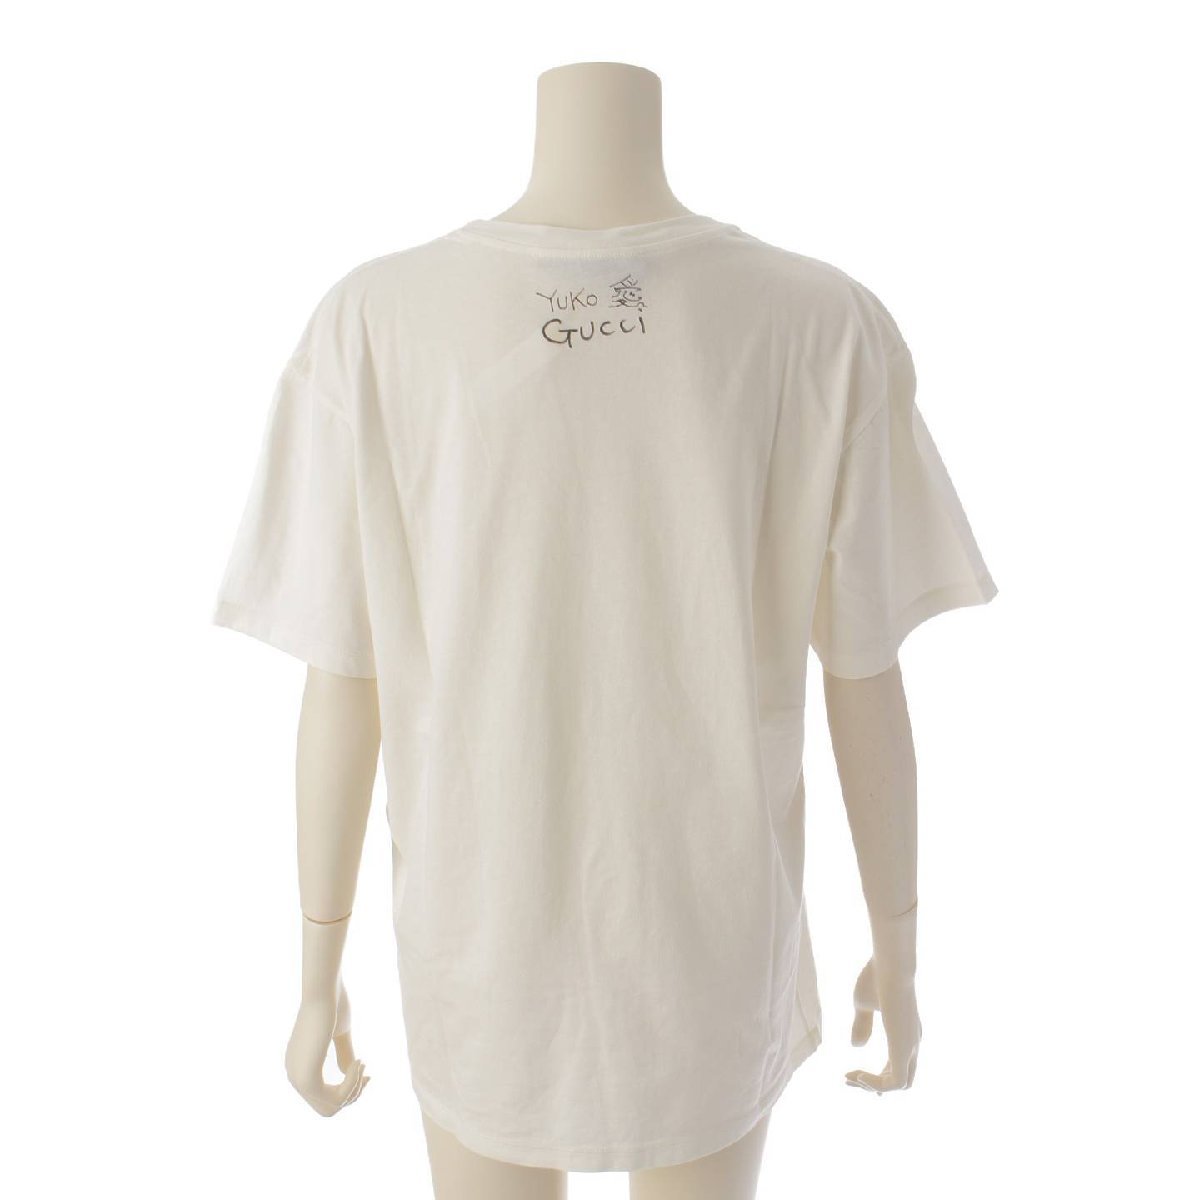 [ Gucci ]Gucci Higuchi Yoko Logo кошка принт короткий рукав футболка 615044 белый × красный S [ б/у ][ стандартный товар гарантия ]193864